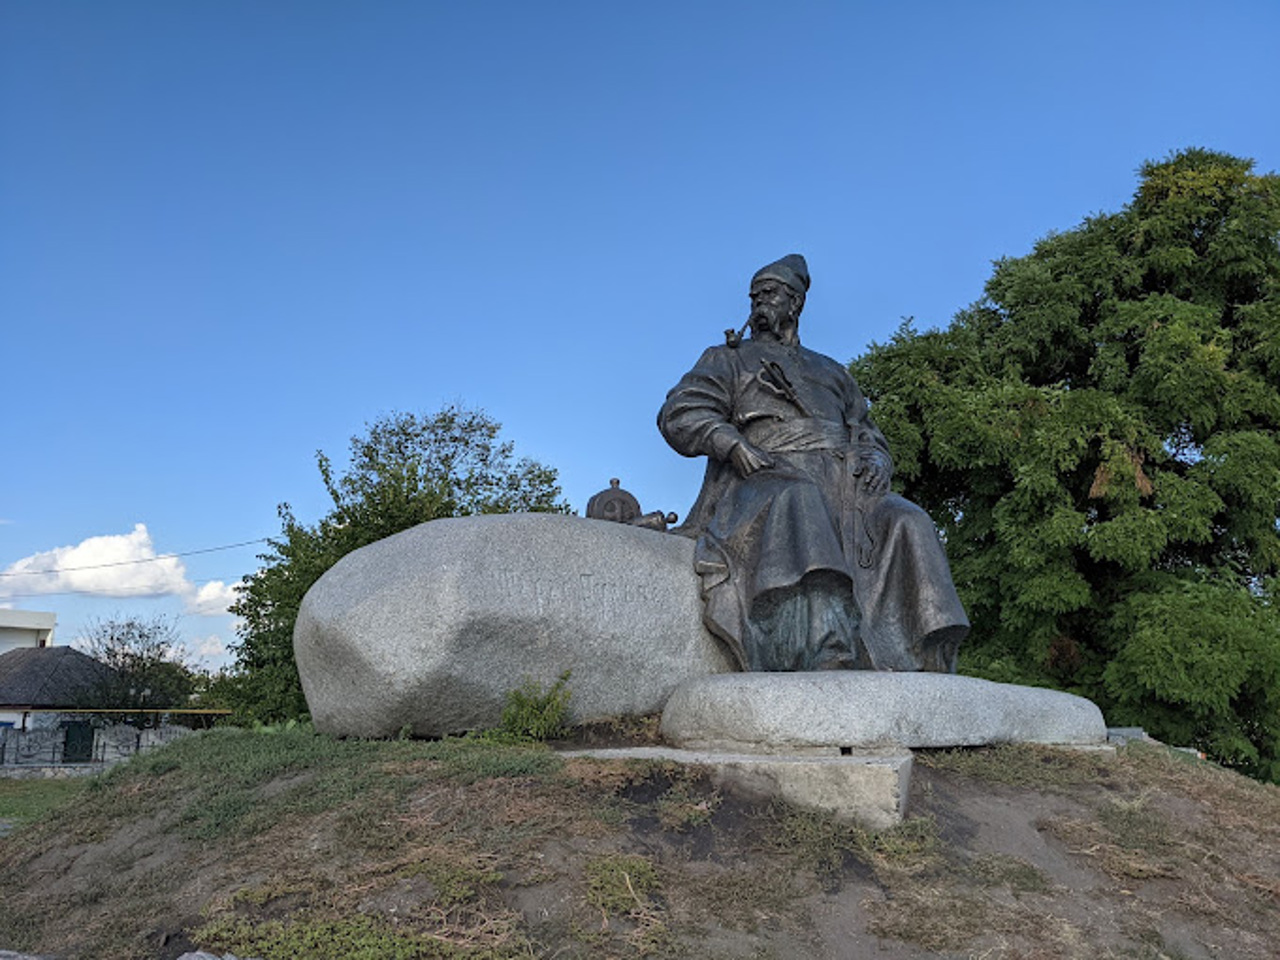 Taras Bulba Monument, Keleberda